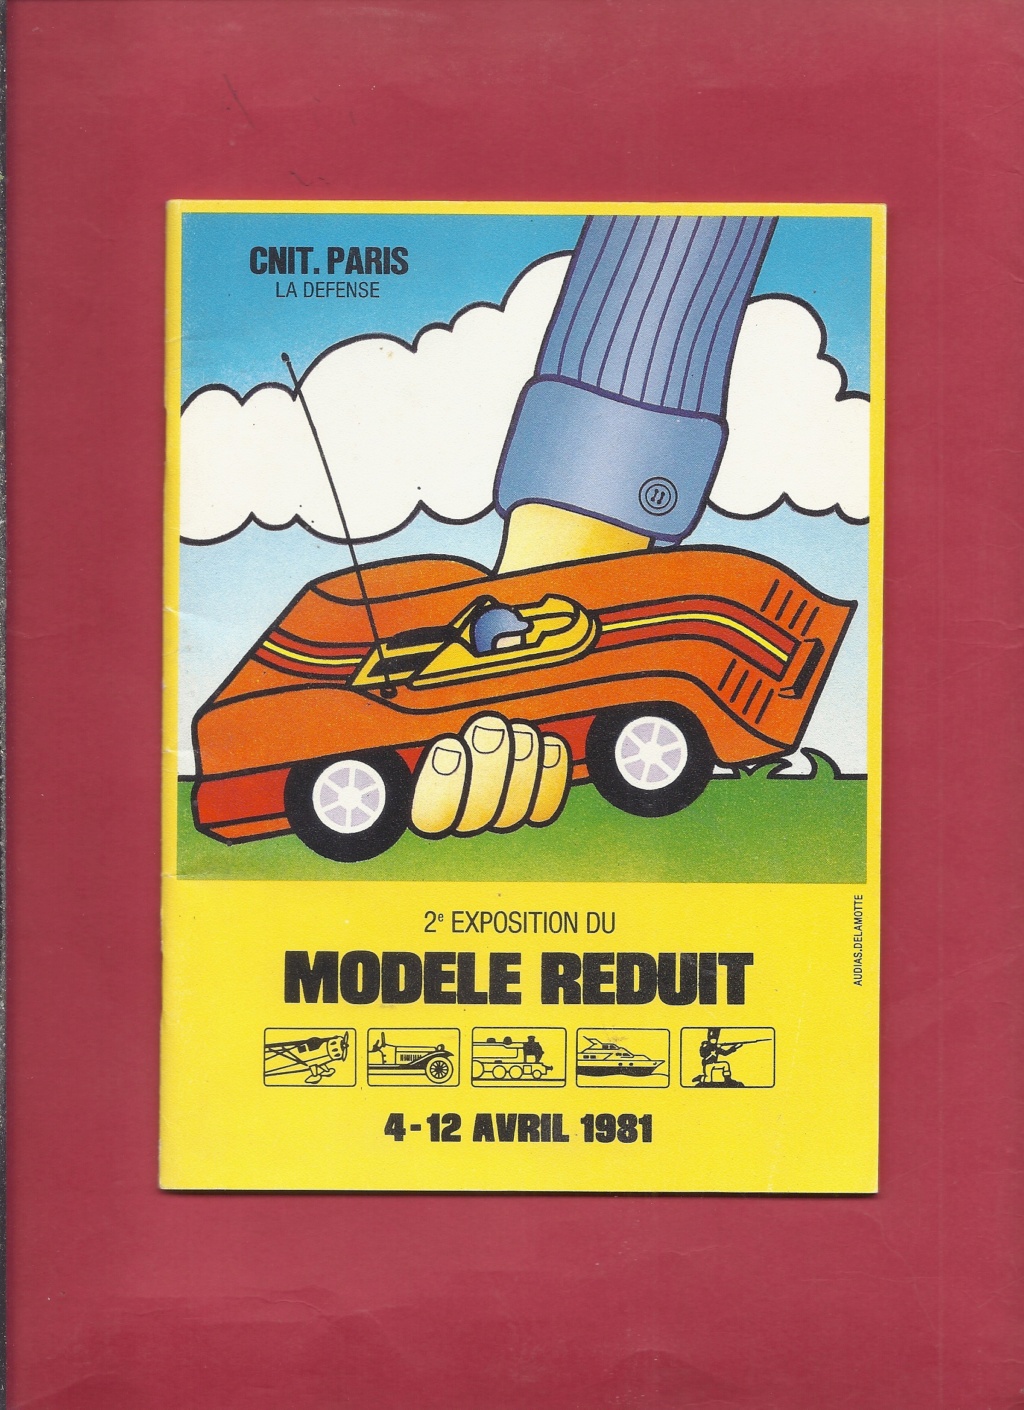 [MODELE REDUIT 1981] 2ème exposition MODELE REDUIT du 4 au 12 avril 1981 Modele10